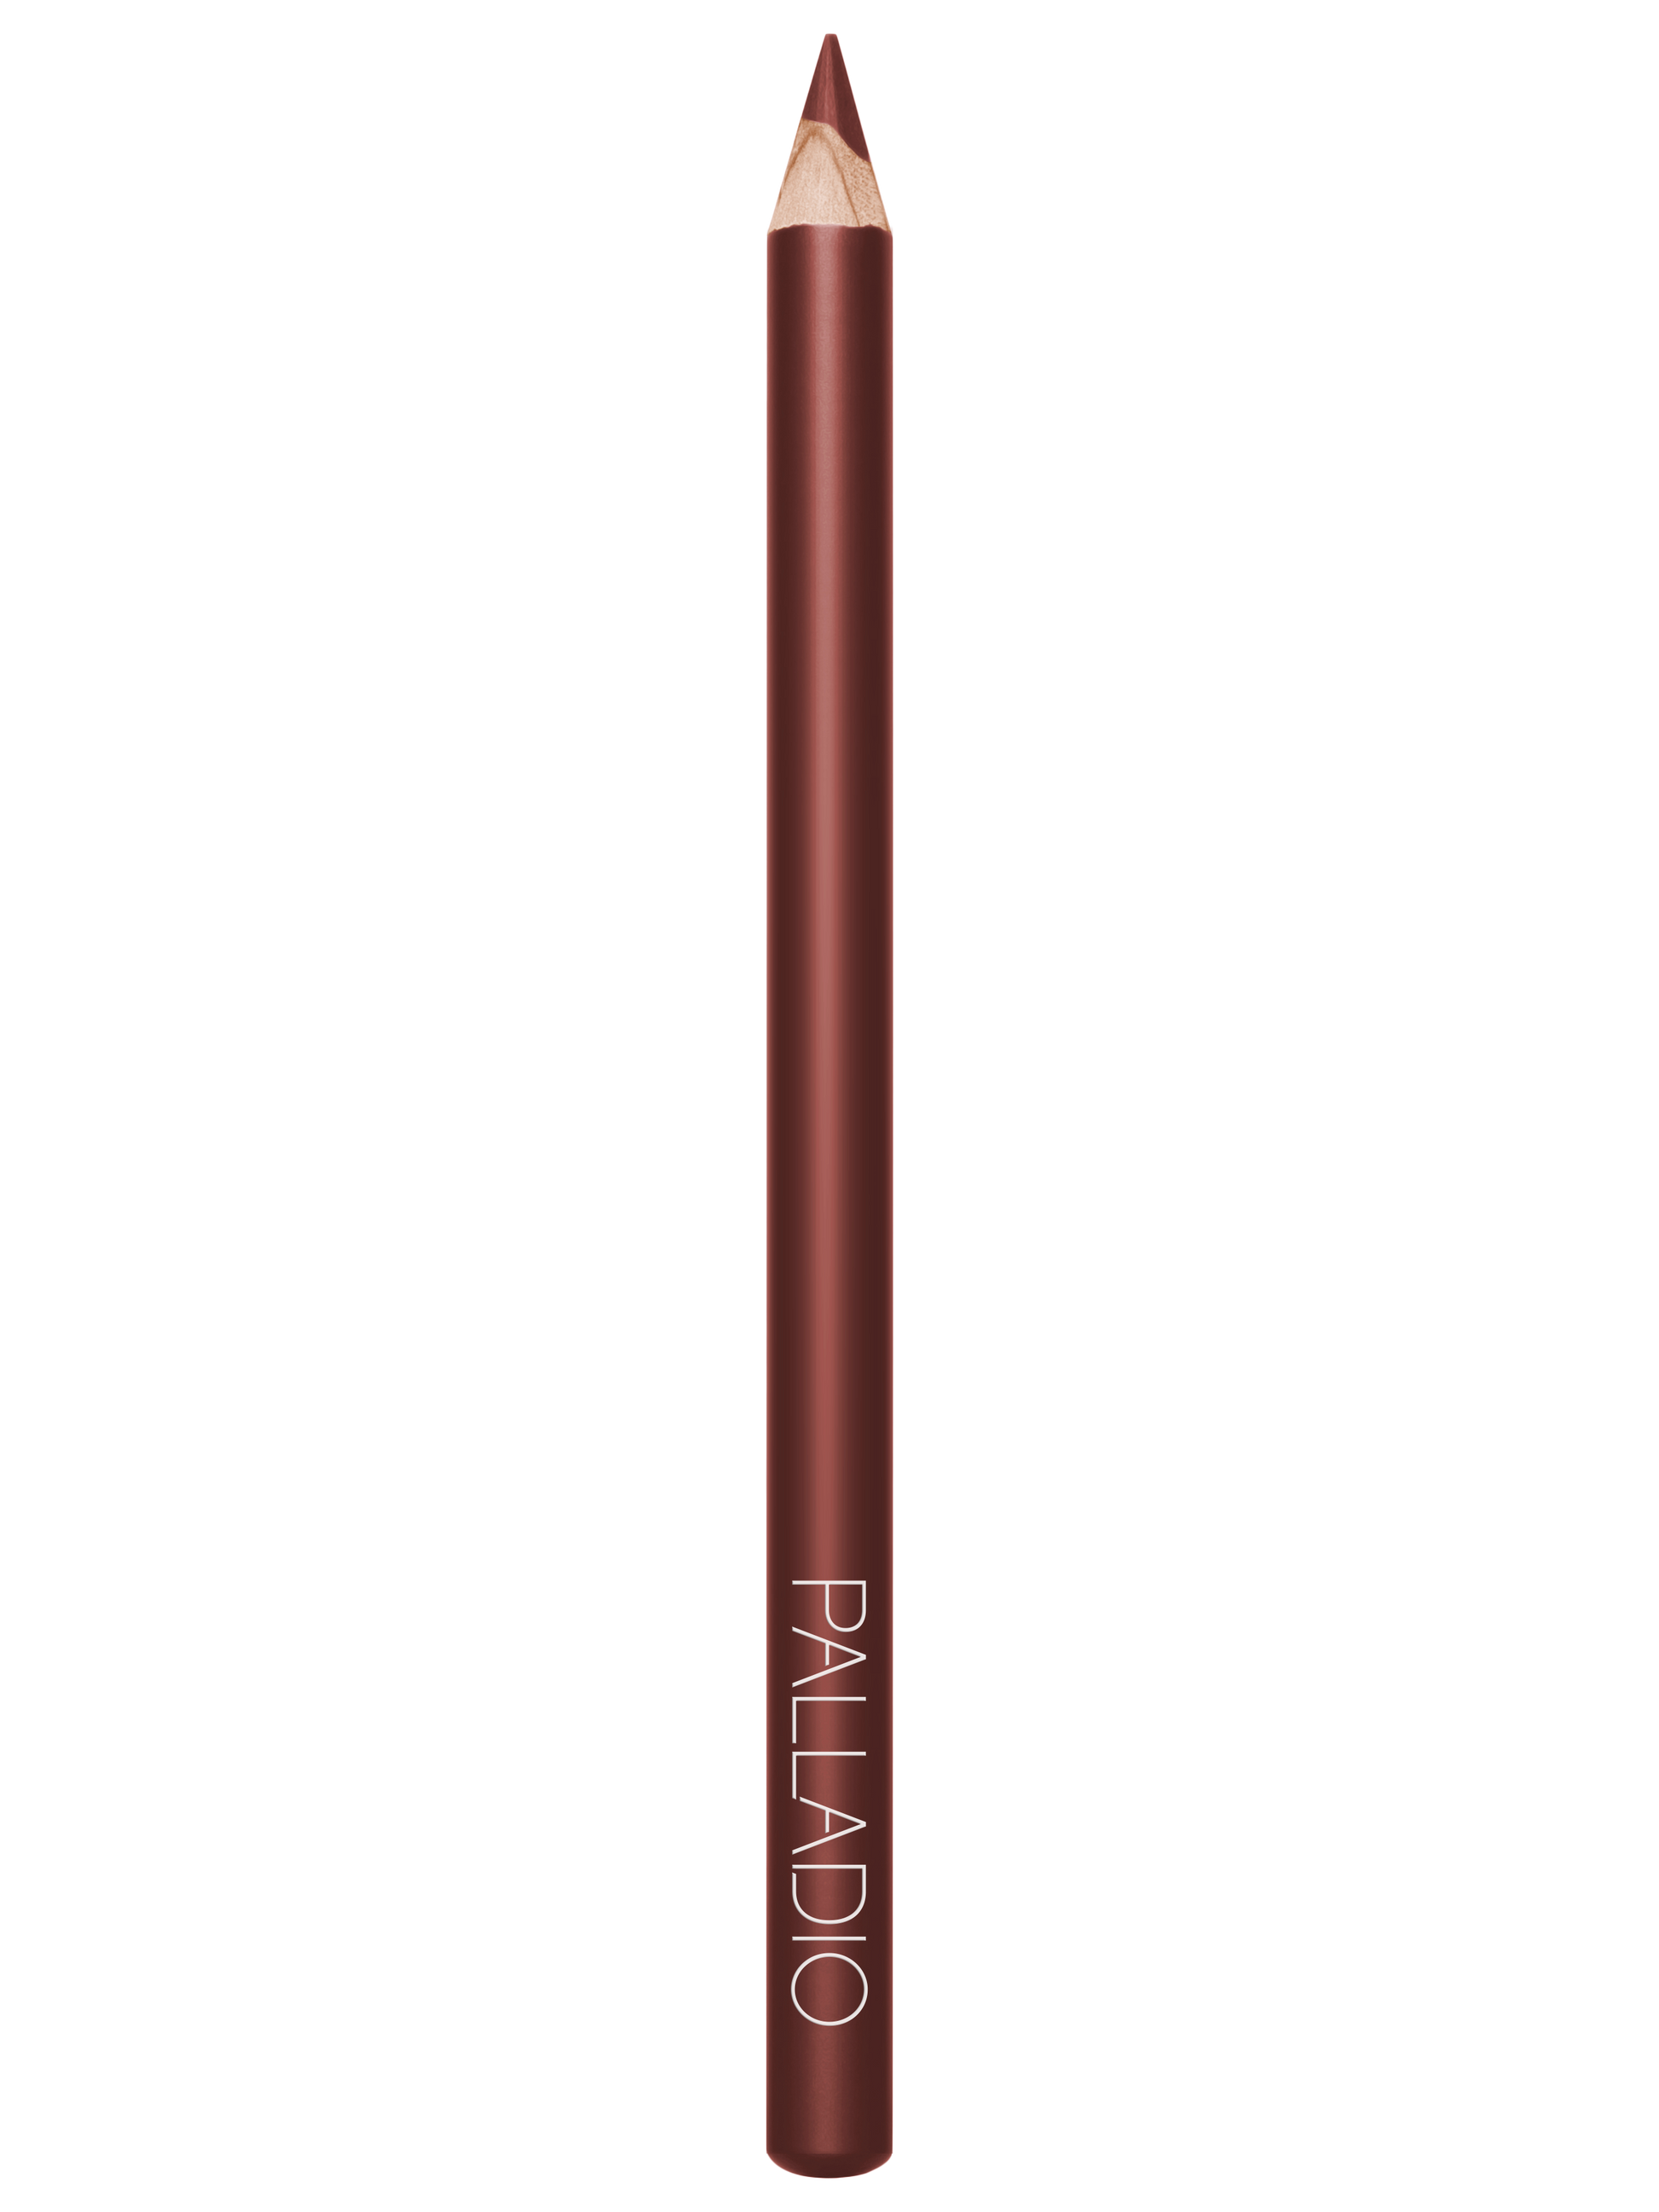 Palladio Lipstick Liner PencilLip LinerPALLADIOColor: Vermouth